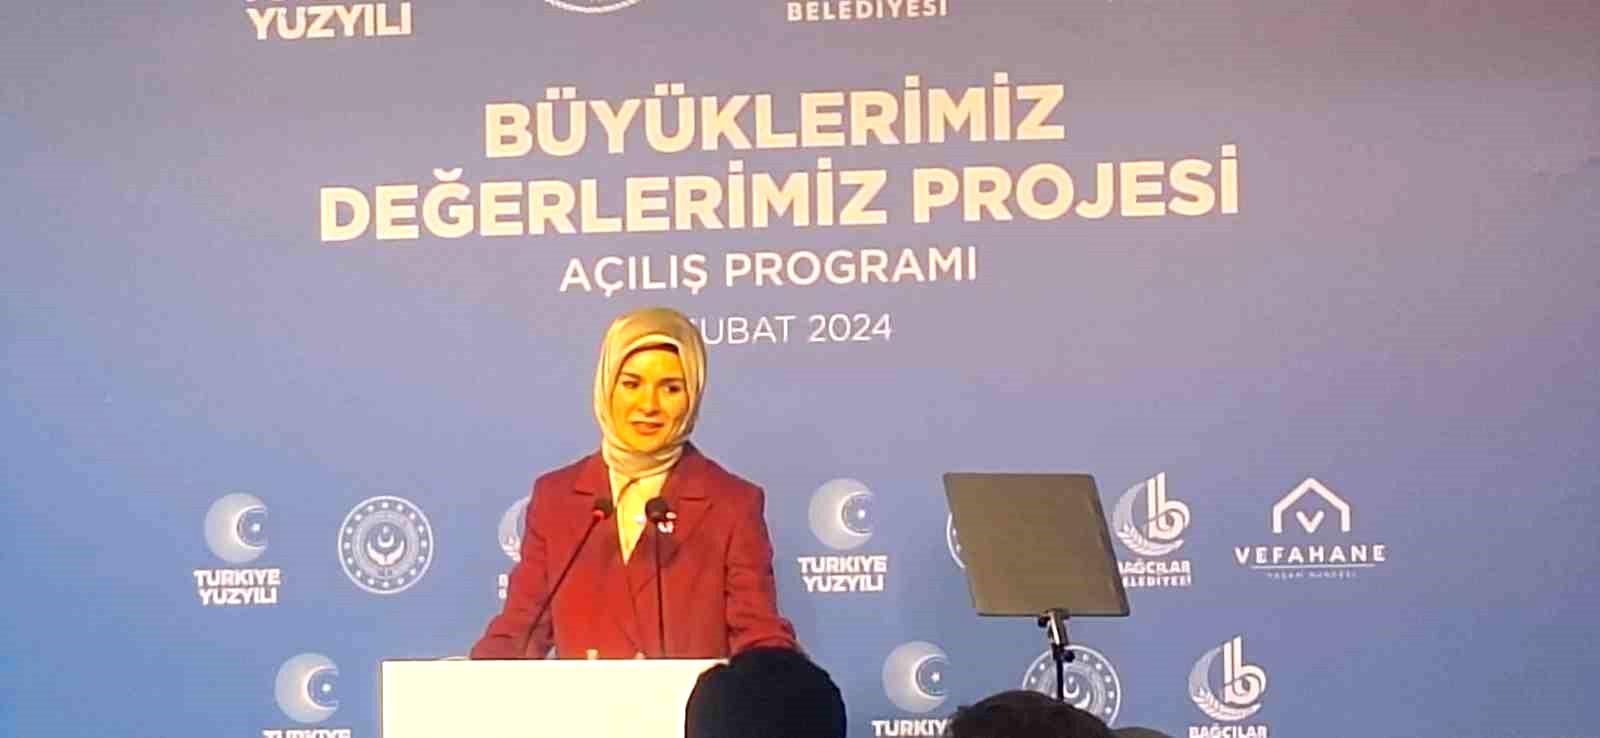 Emine Erdoğan “Büyüklerimiz Değerlerimiz Projesi”nin tanıtımına katıldı